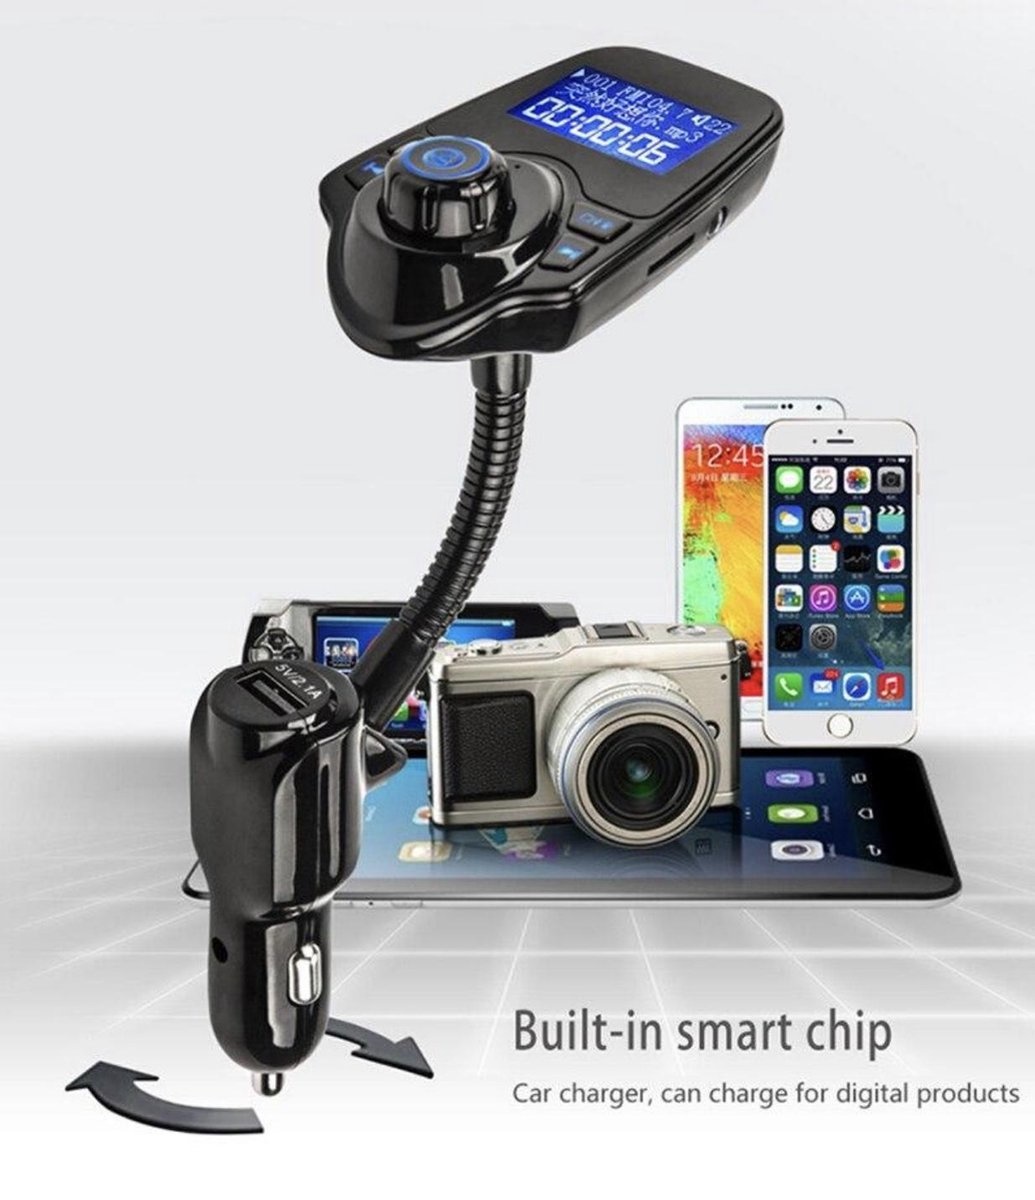 FM-Transmitter voor in de Auto, Bluetooth®, Bass Boost, microSD-kaartsleuf, Handsfree Bellen